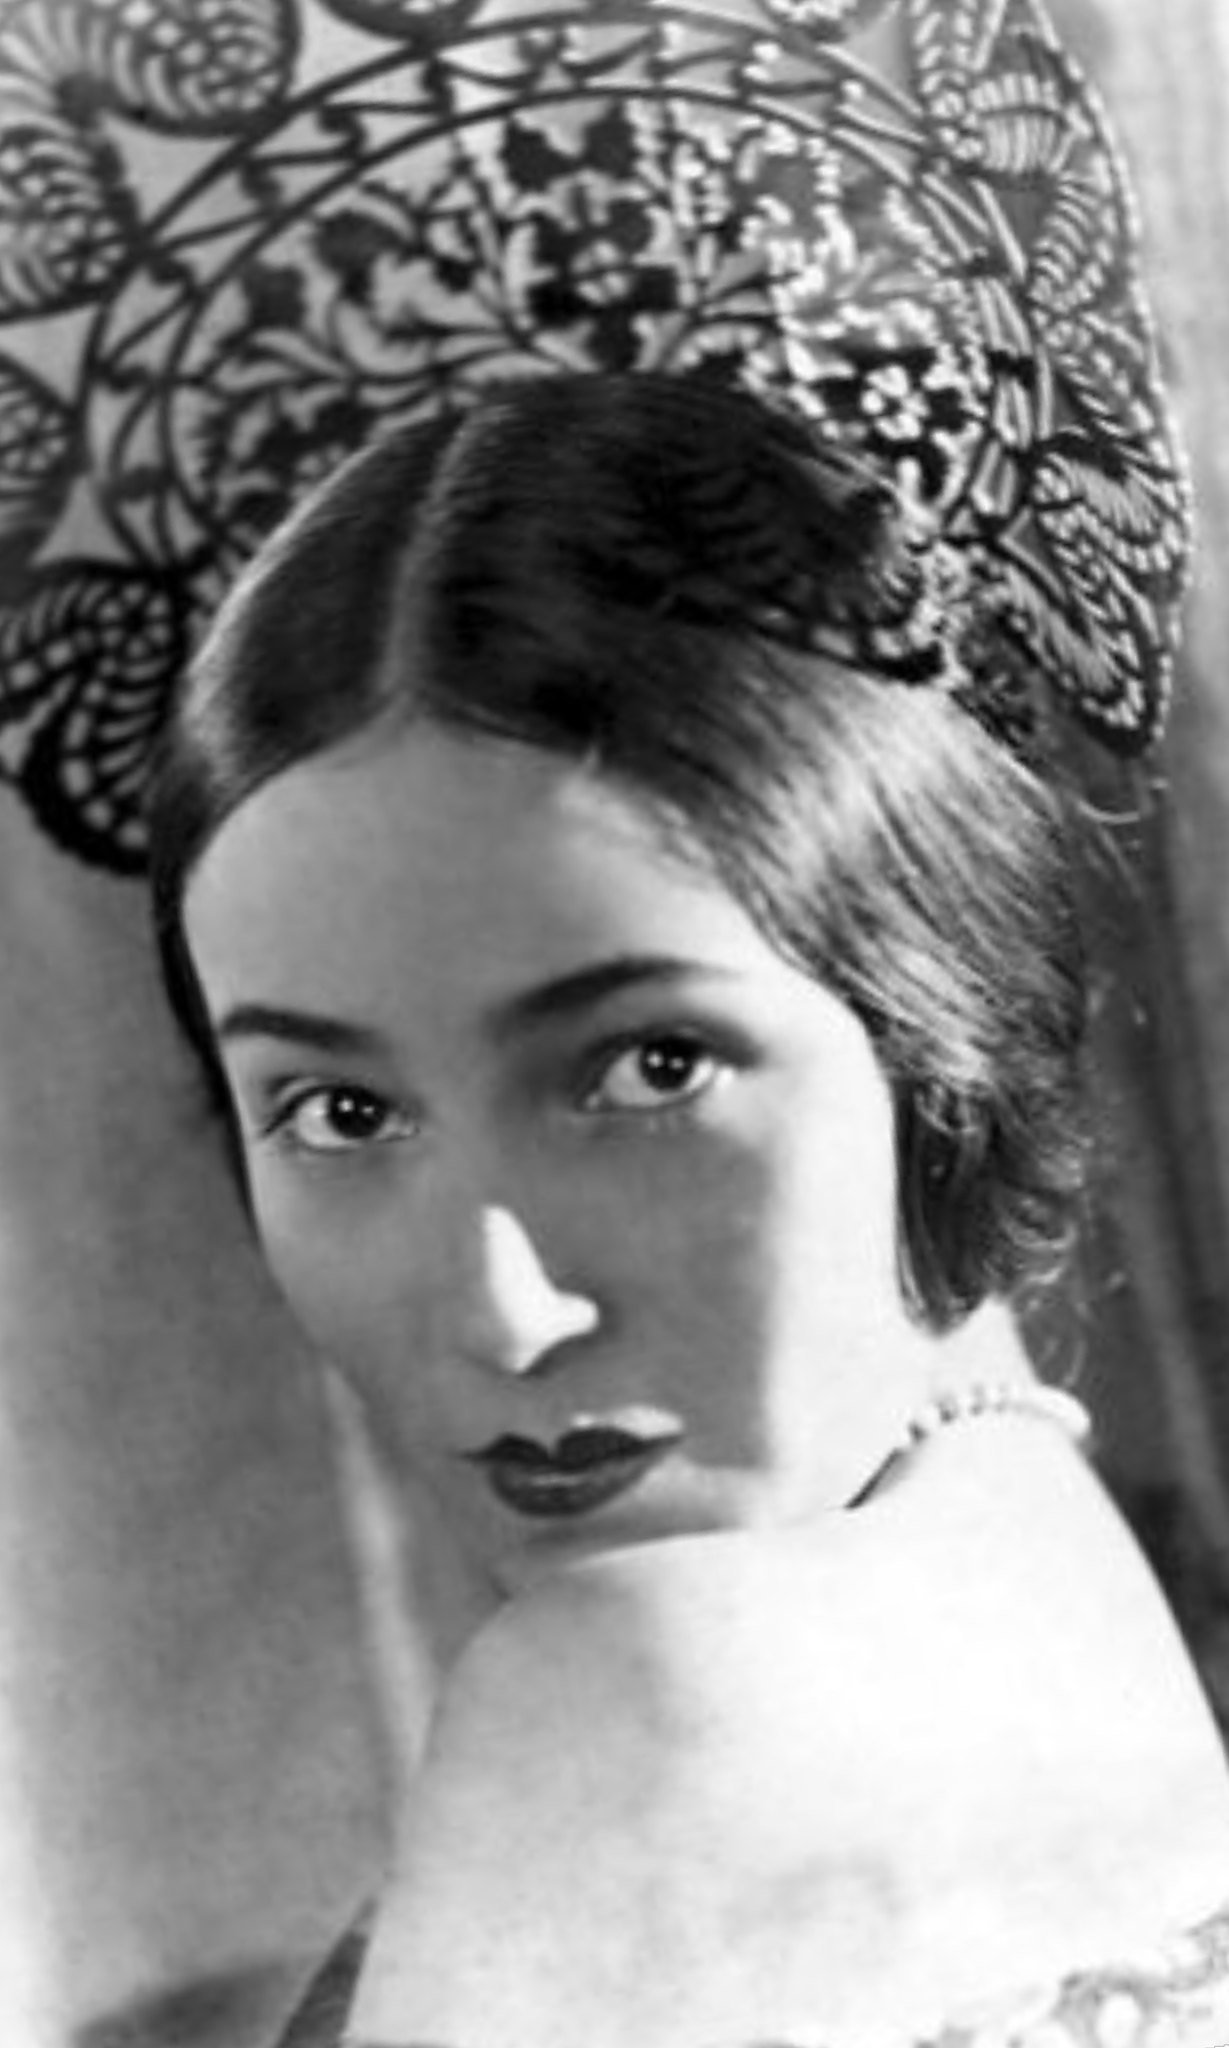 Dolores del Río, famosa actriz mexicana de cine mudo en los años 20. | Imagen: Flickr